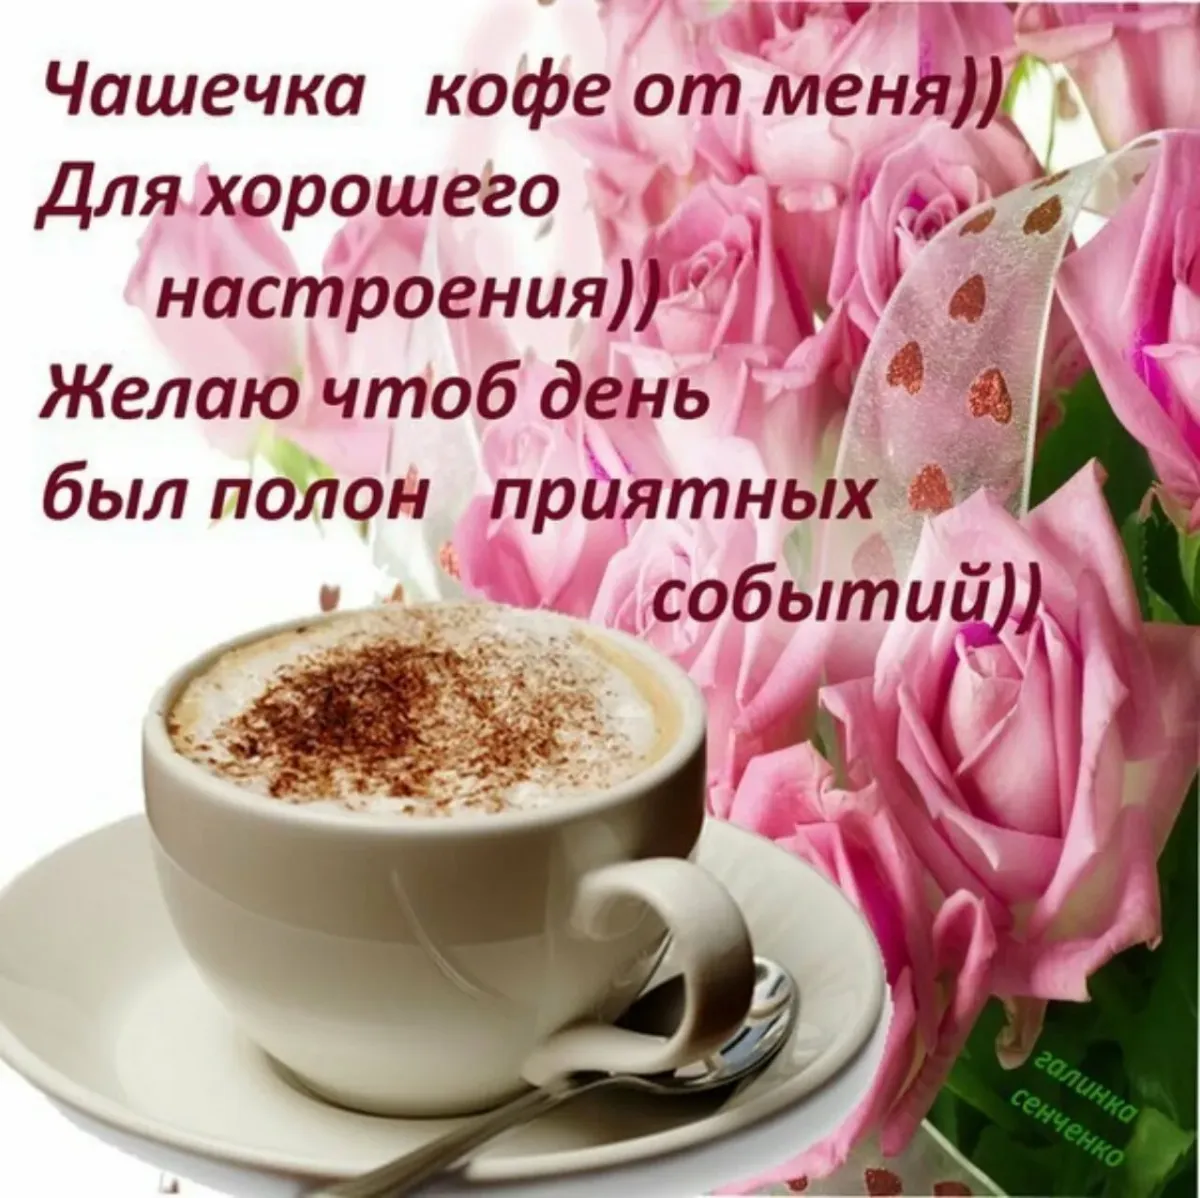 Пожелания с добрым утром и хорошего настроения. Чашечка кофе для настроения. С добрым утром и хорошим днём с кофе и пожеланиями. Доброго утра хорошего дня и отличного настроения.